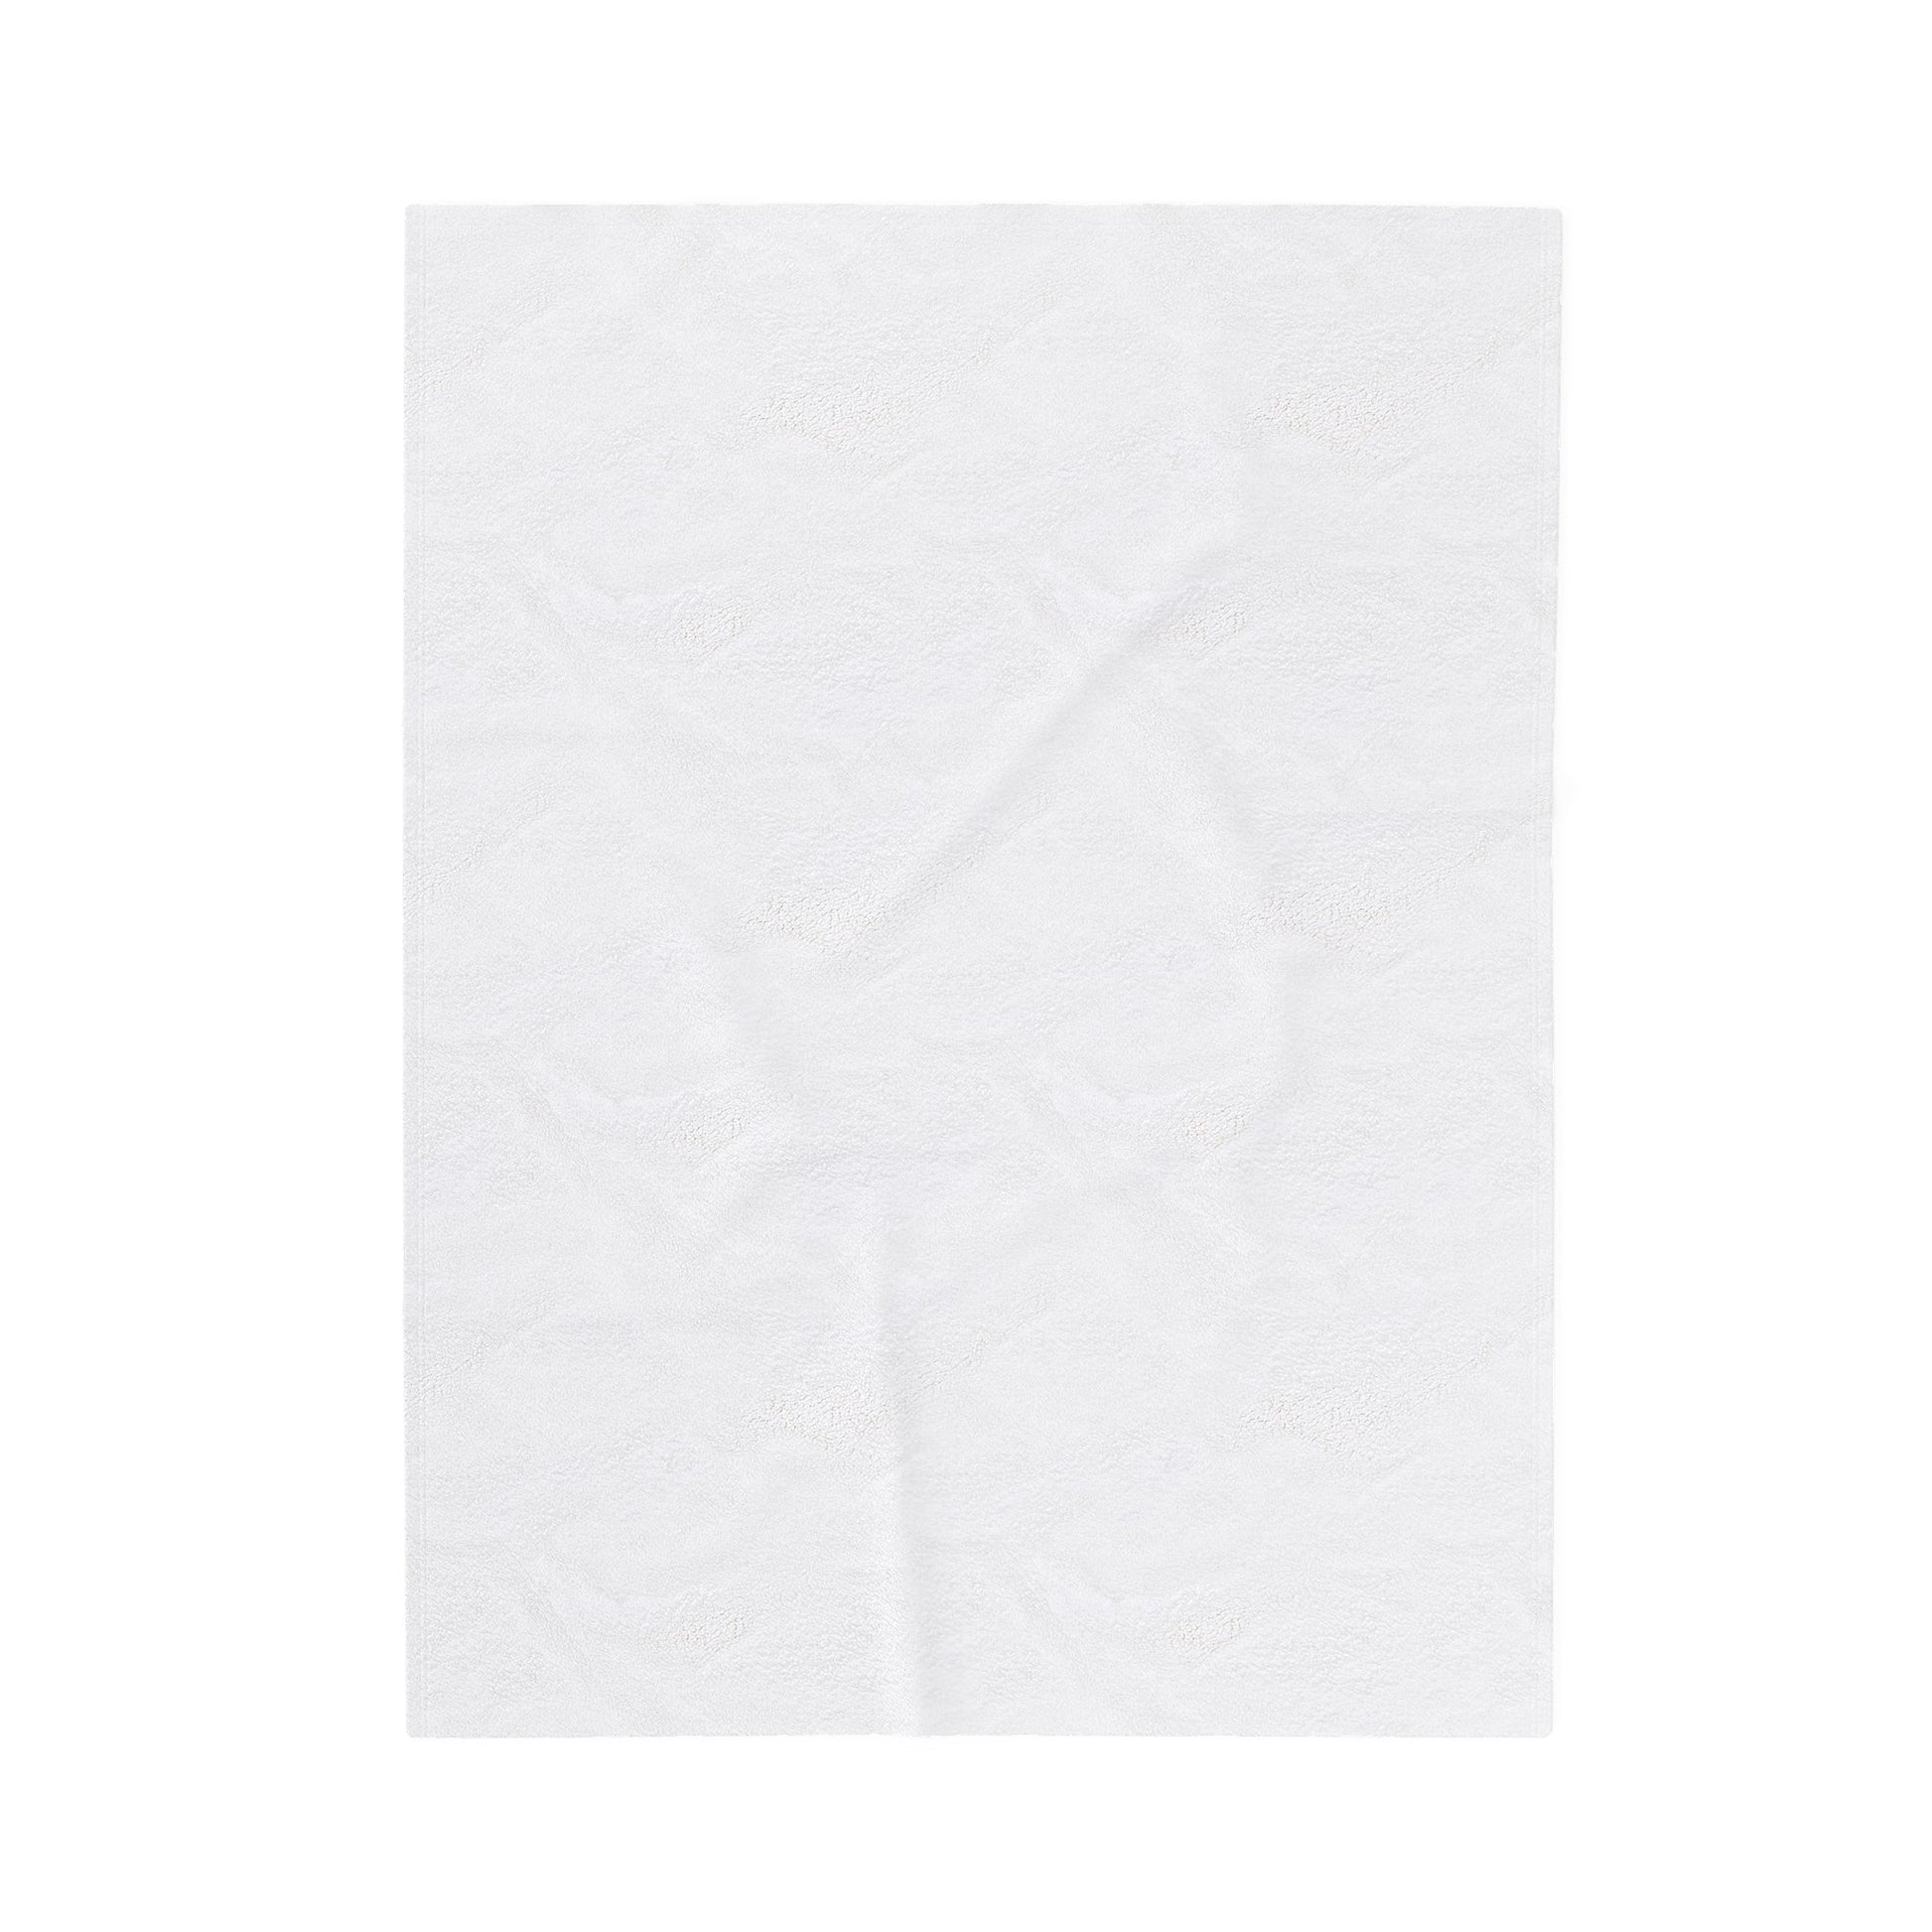 The Avant-gardist - Plush Blanket-Plush Blankets-Mr.Zao - Krazy Art Gallery